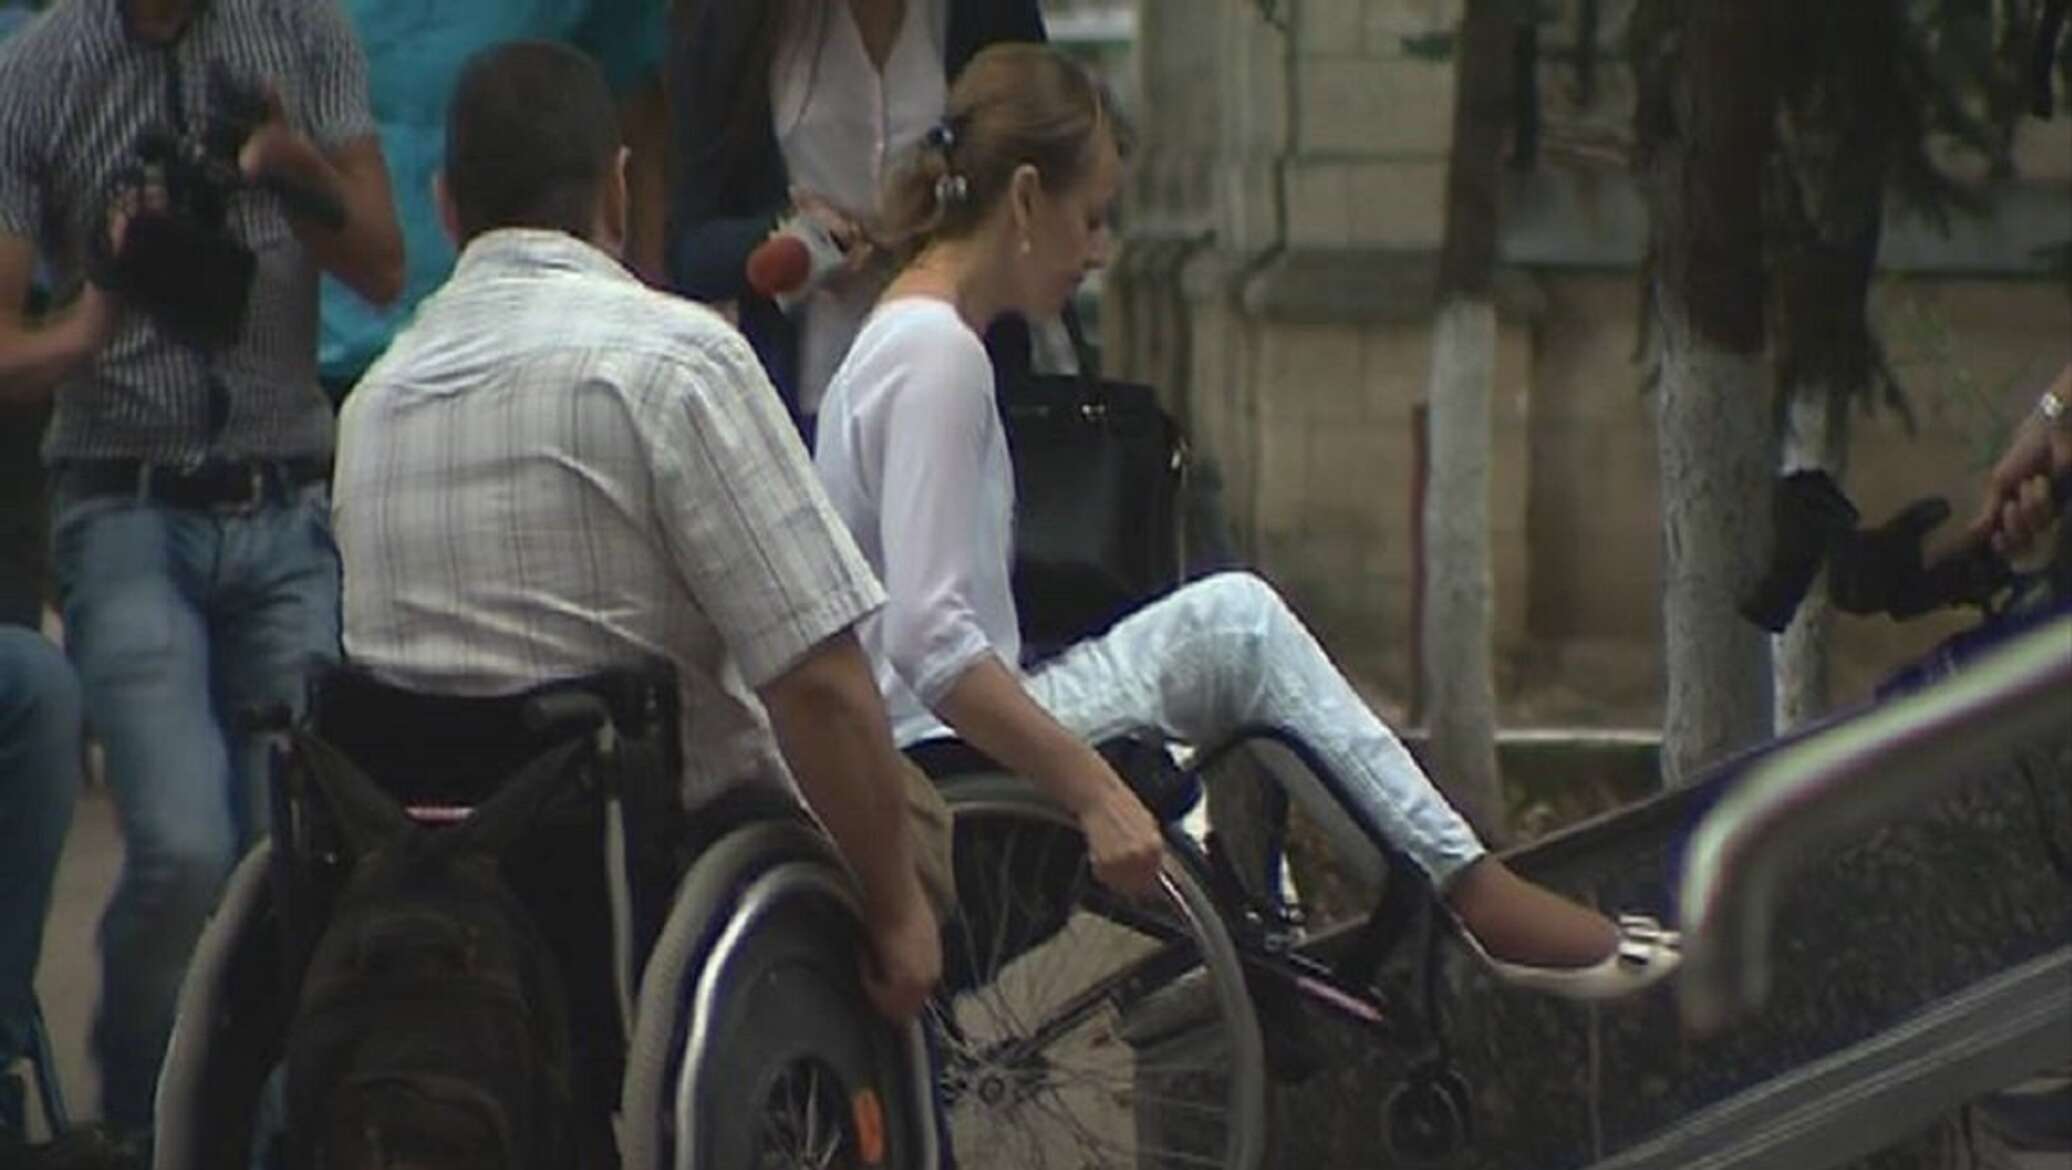 Кишинев тбилиси. Полицейские девушки в инвалидной коляске. Русская мелодрама про девушку в инвалидном кресле.